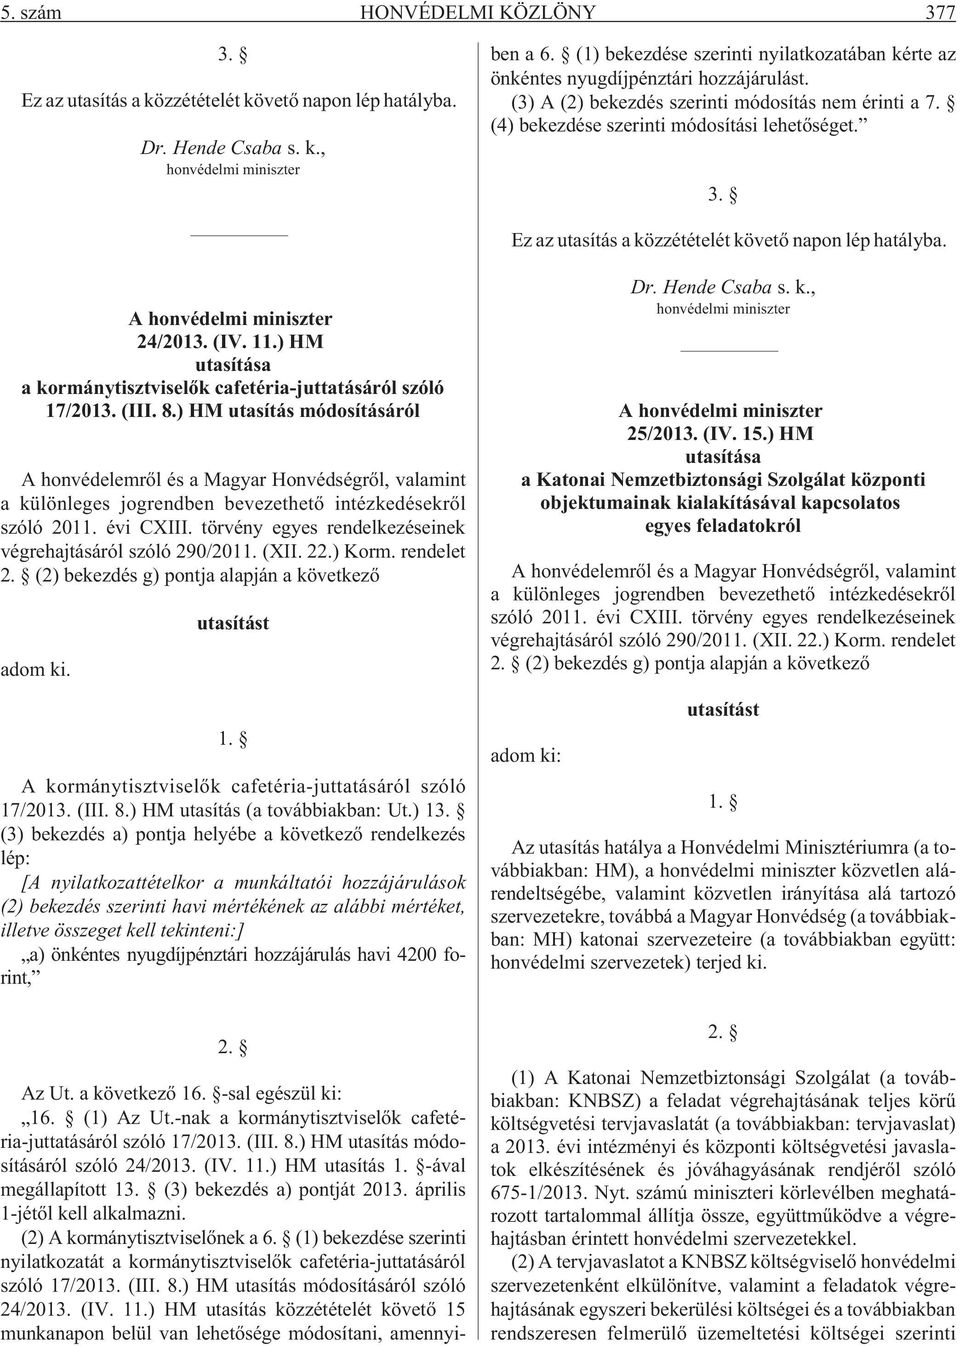 április 1-jétõl kell alkalmazni. (2) A kormánytisztviselõnek a 6. (1) bekezdése szerinti nyilatkozatát a kormánytisztviselõk cafetéria-juttatásáról szóló 17/2013. (III. 8.